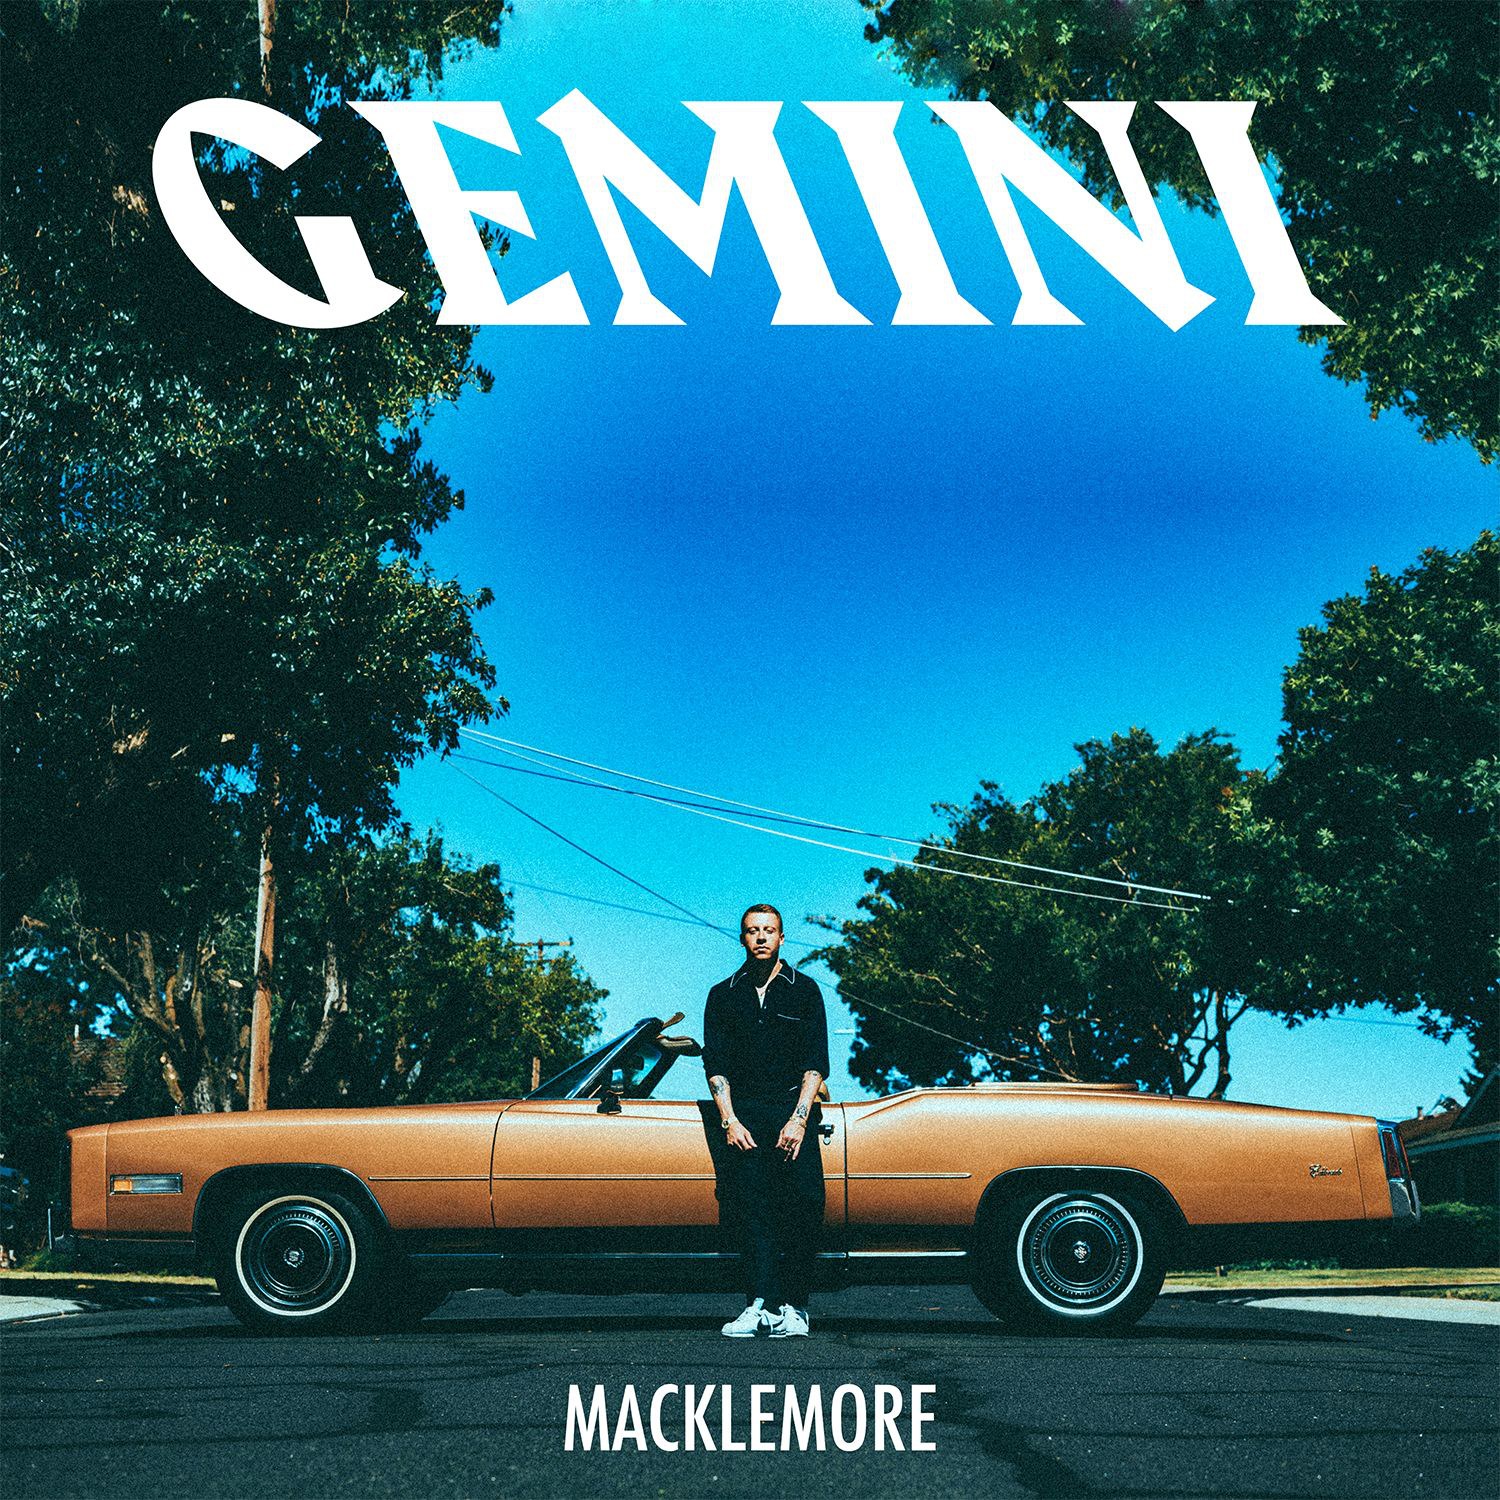 Gemini album cover artwork. Photo by: Macklemore